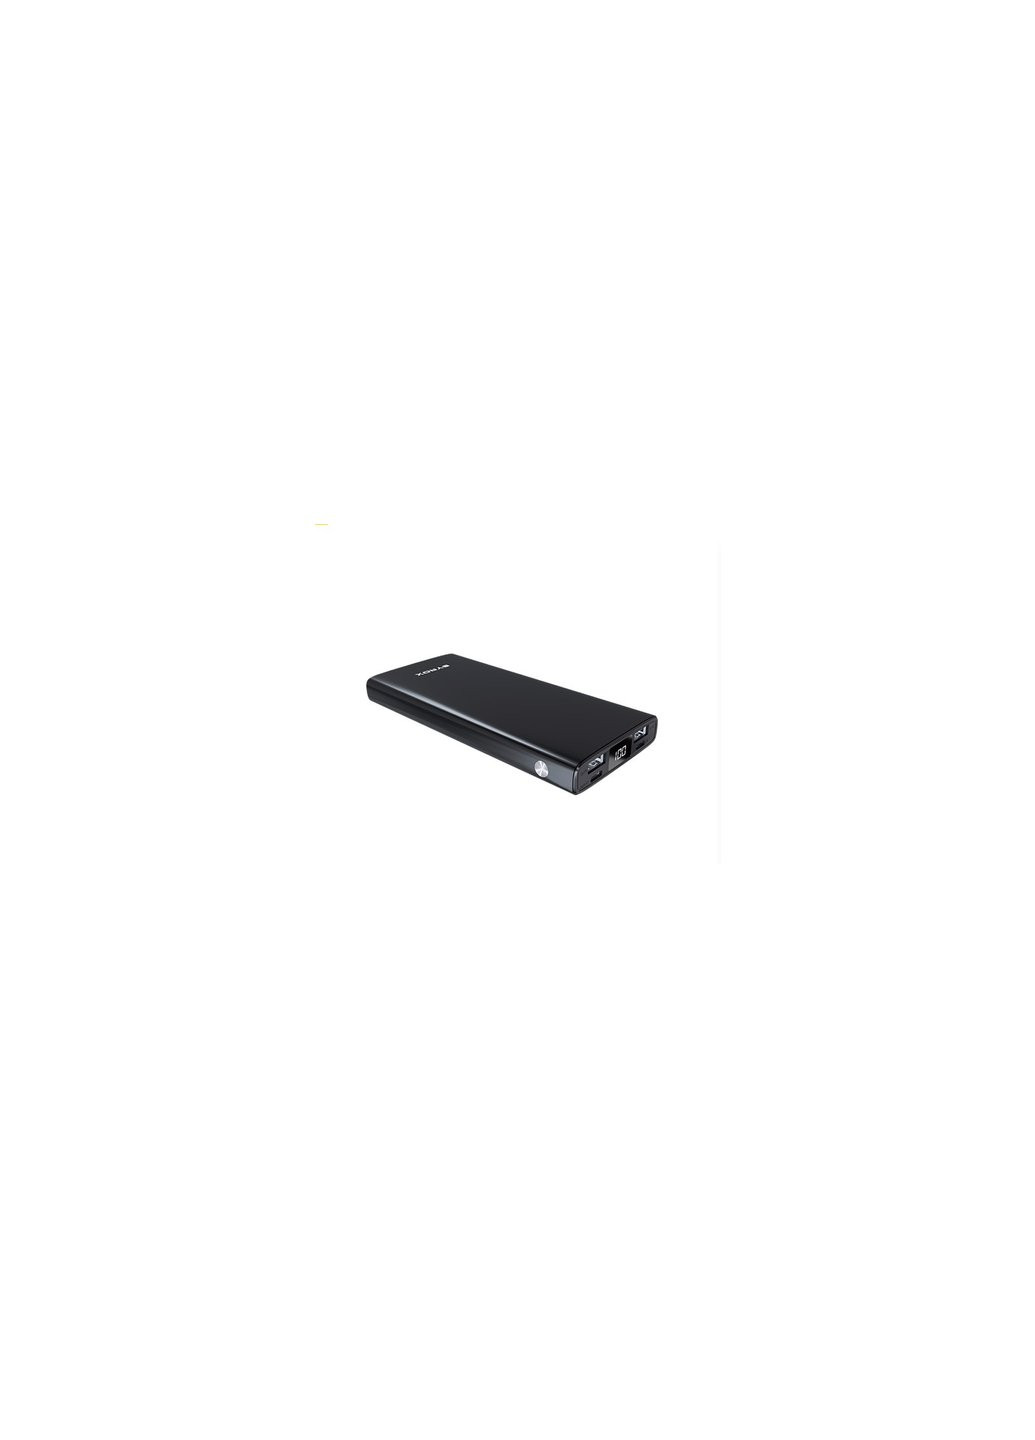 Батарея универсальная PB117 10000mAh, USB*2, Micro USB, Type C, black (PB117_black) Syrox